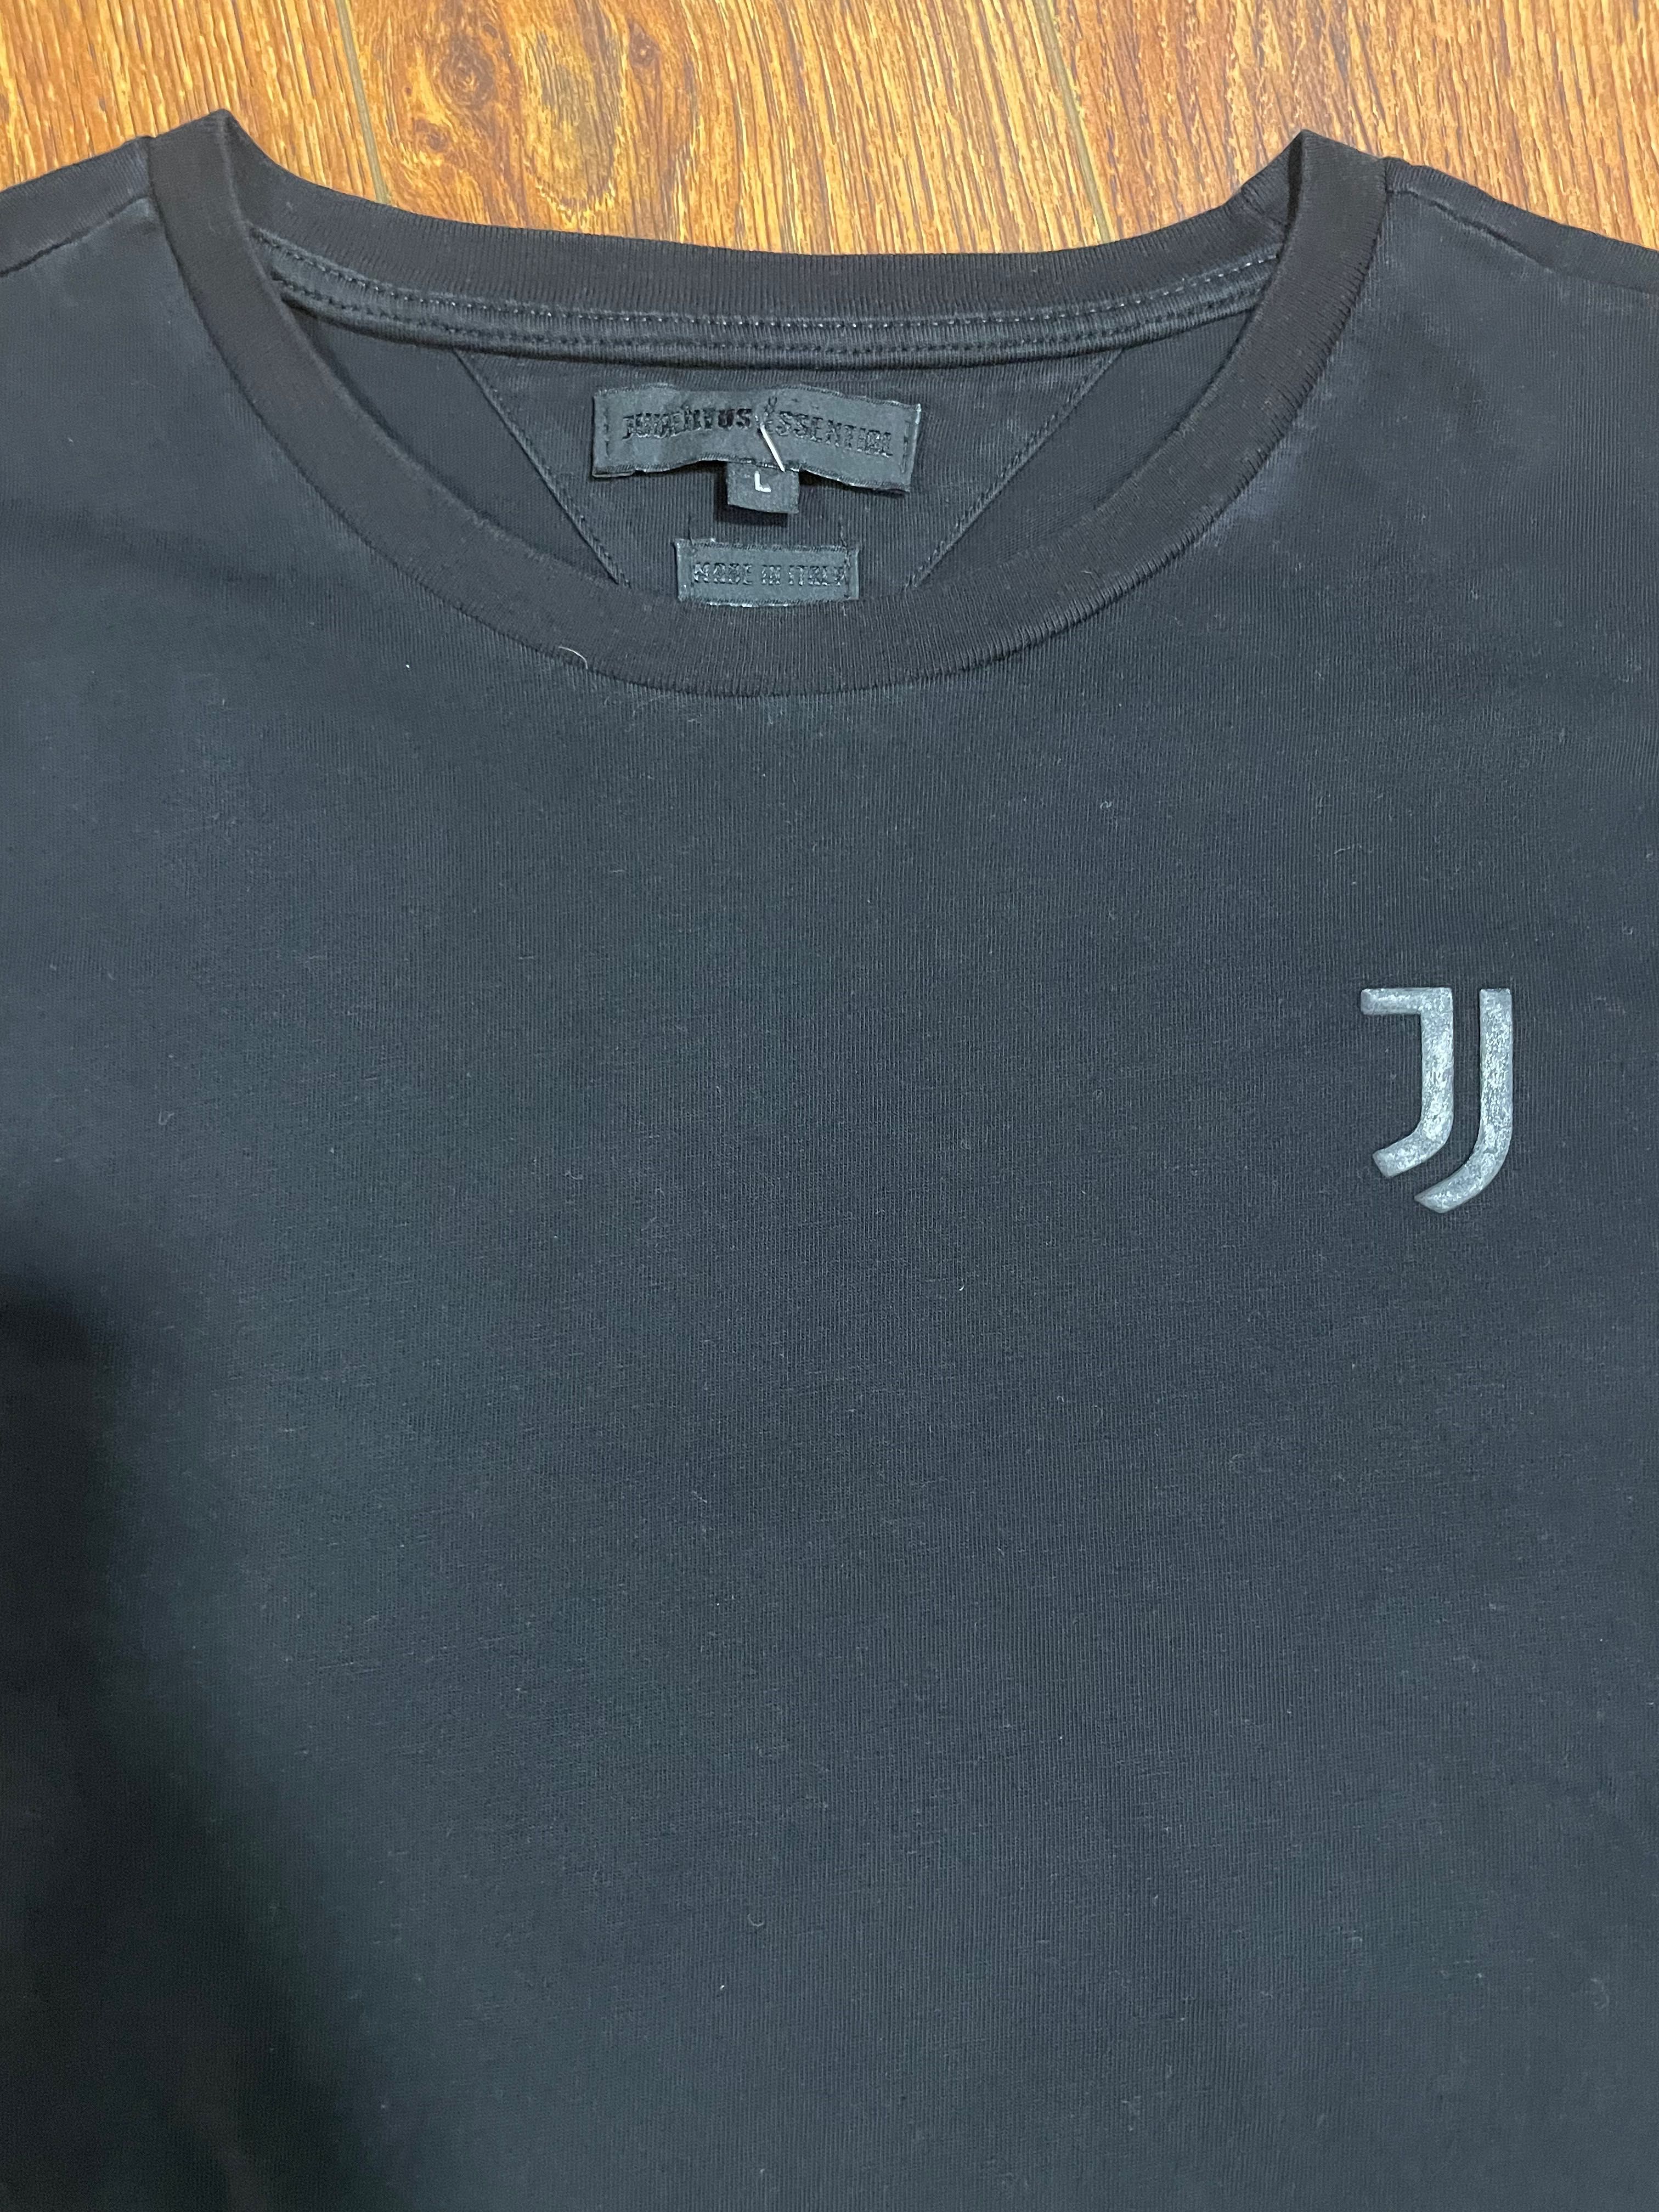 Vand bluza Juventus originals barbati